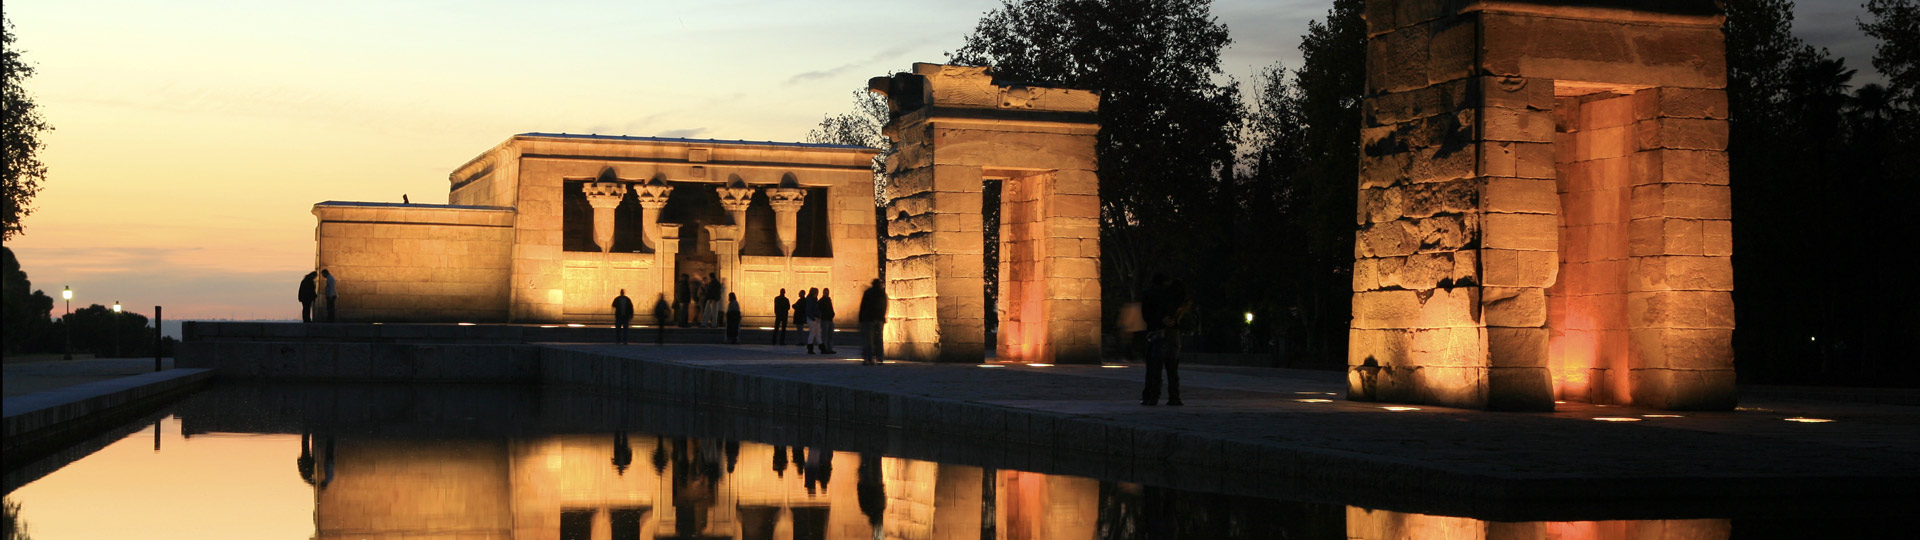 Temple of Debod in Madrid